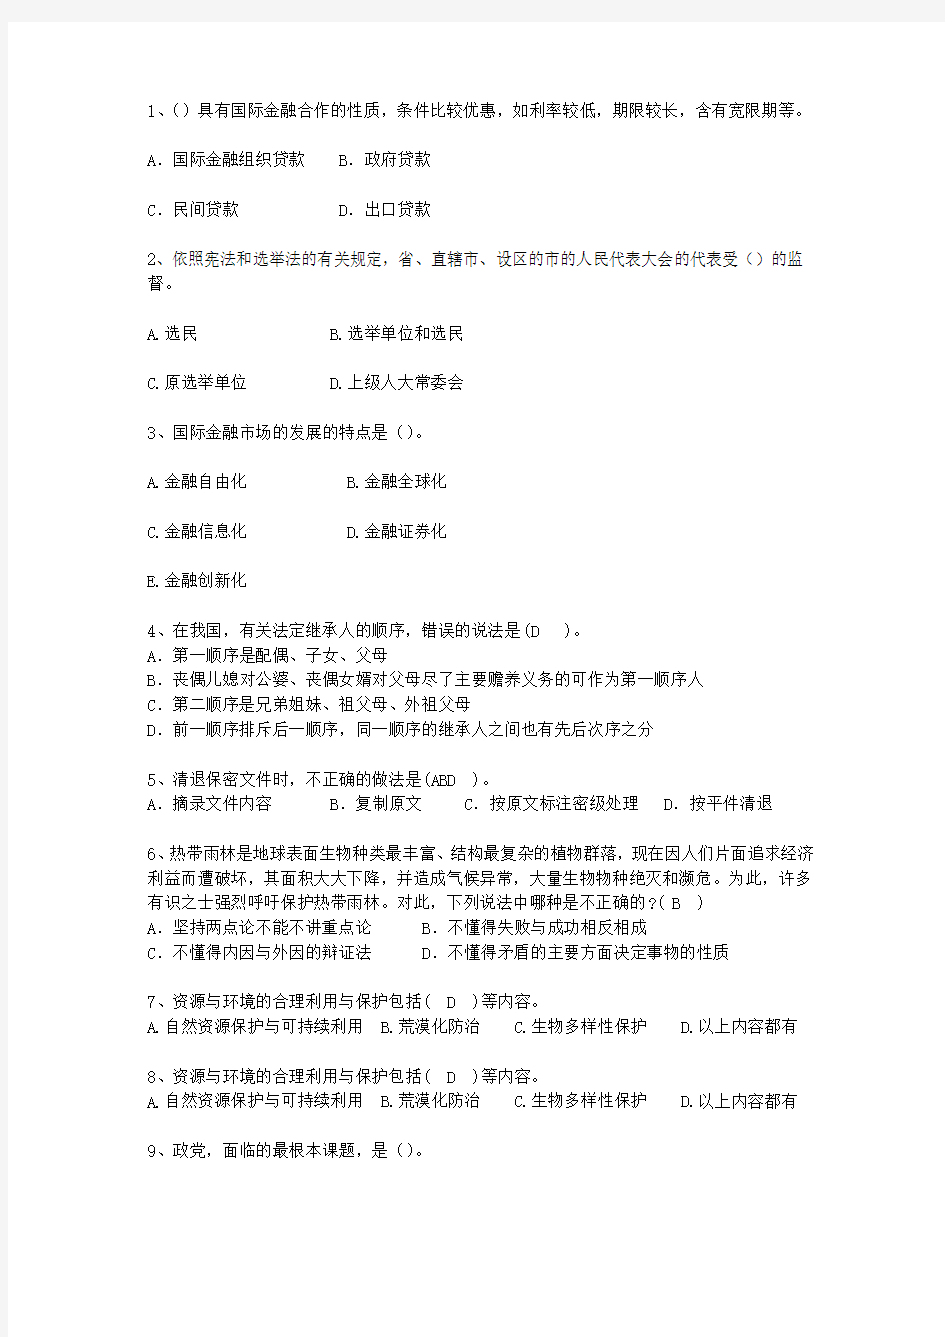 2014宁夏回族自治区公开选拔领导干部面试(必备资料)